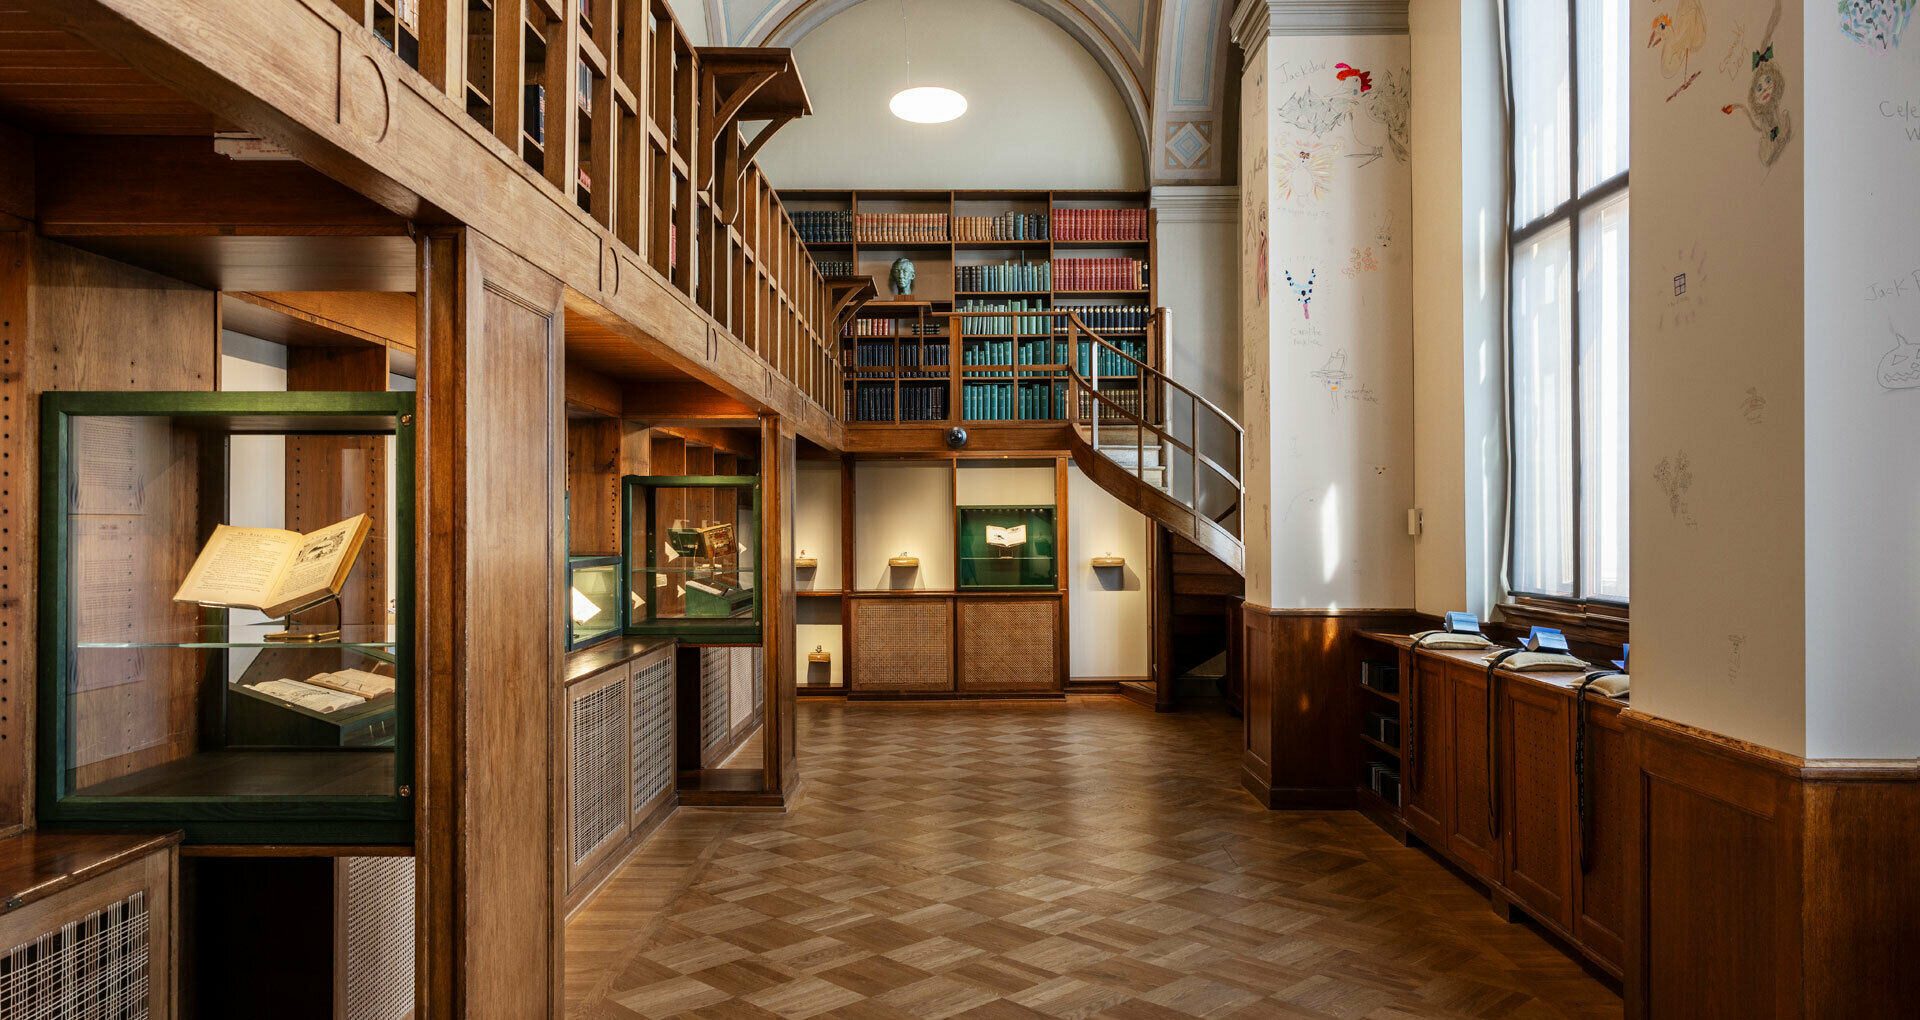 Interiör från ett gammalt bibliotek med böcker i träbokhyllor samt en konstinstallation i glasmontrar och med små böcker på kuddar i bibliotekets fönster.